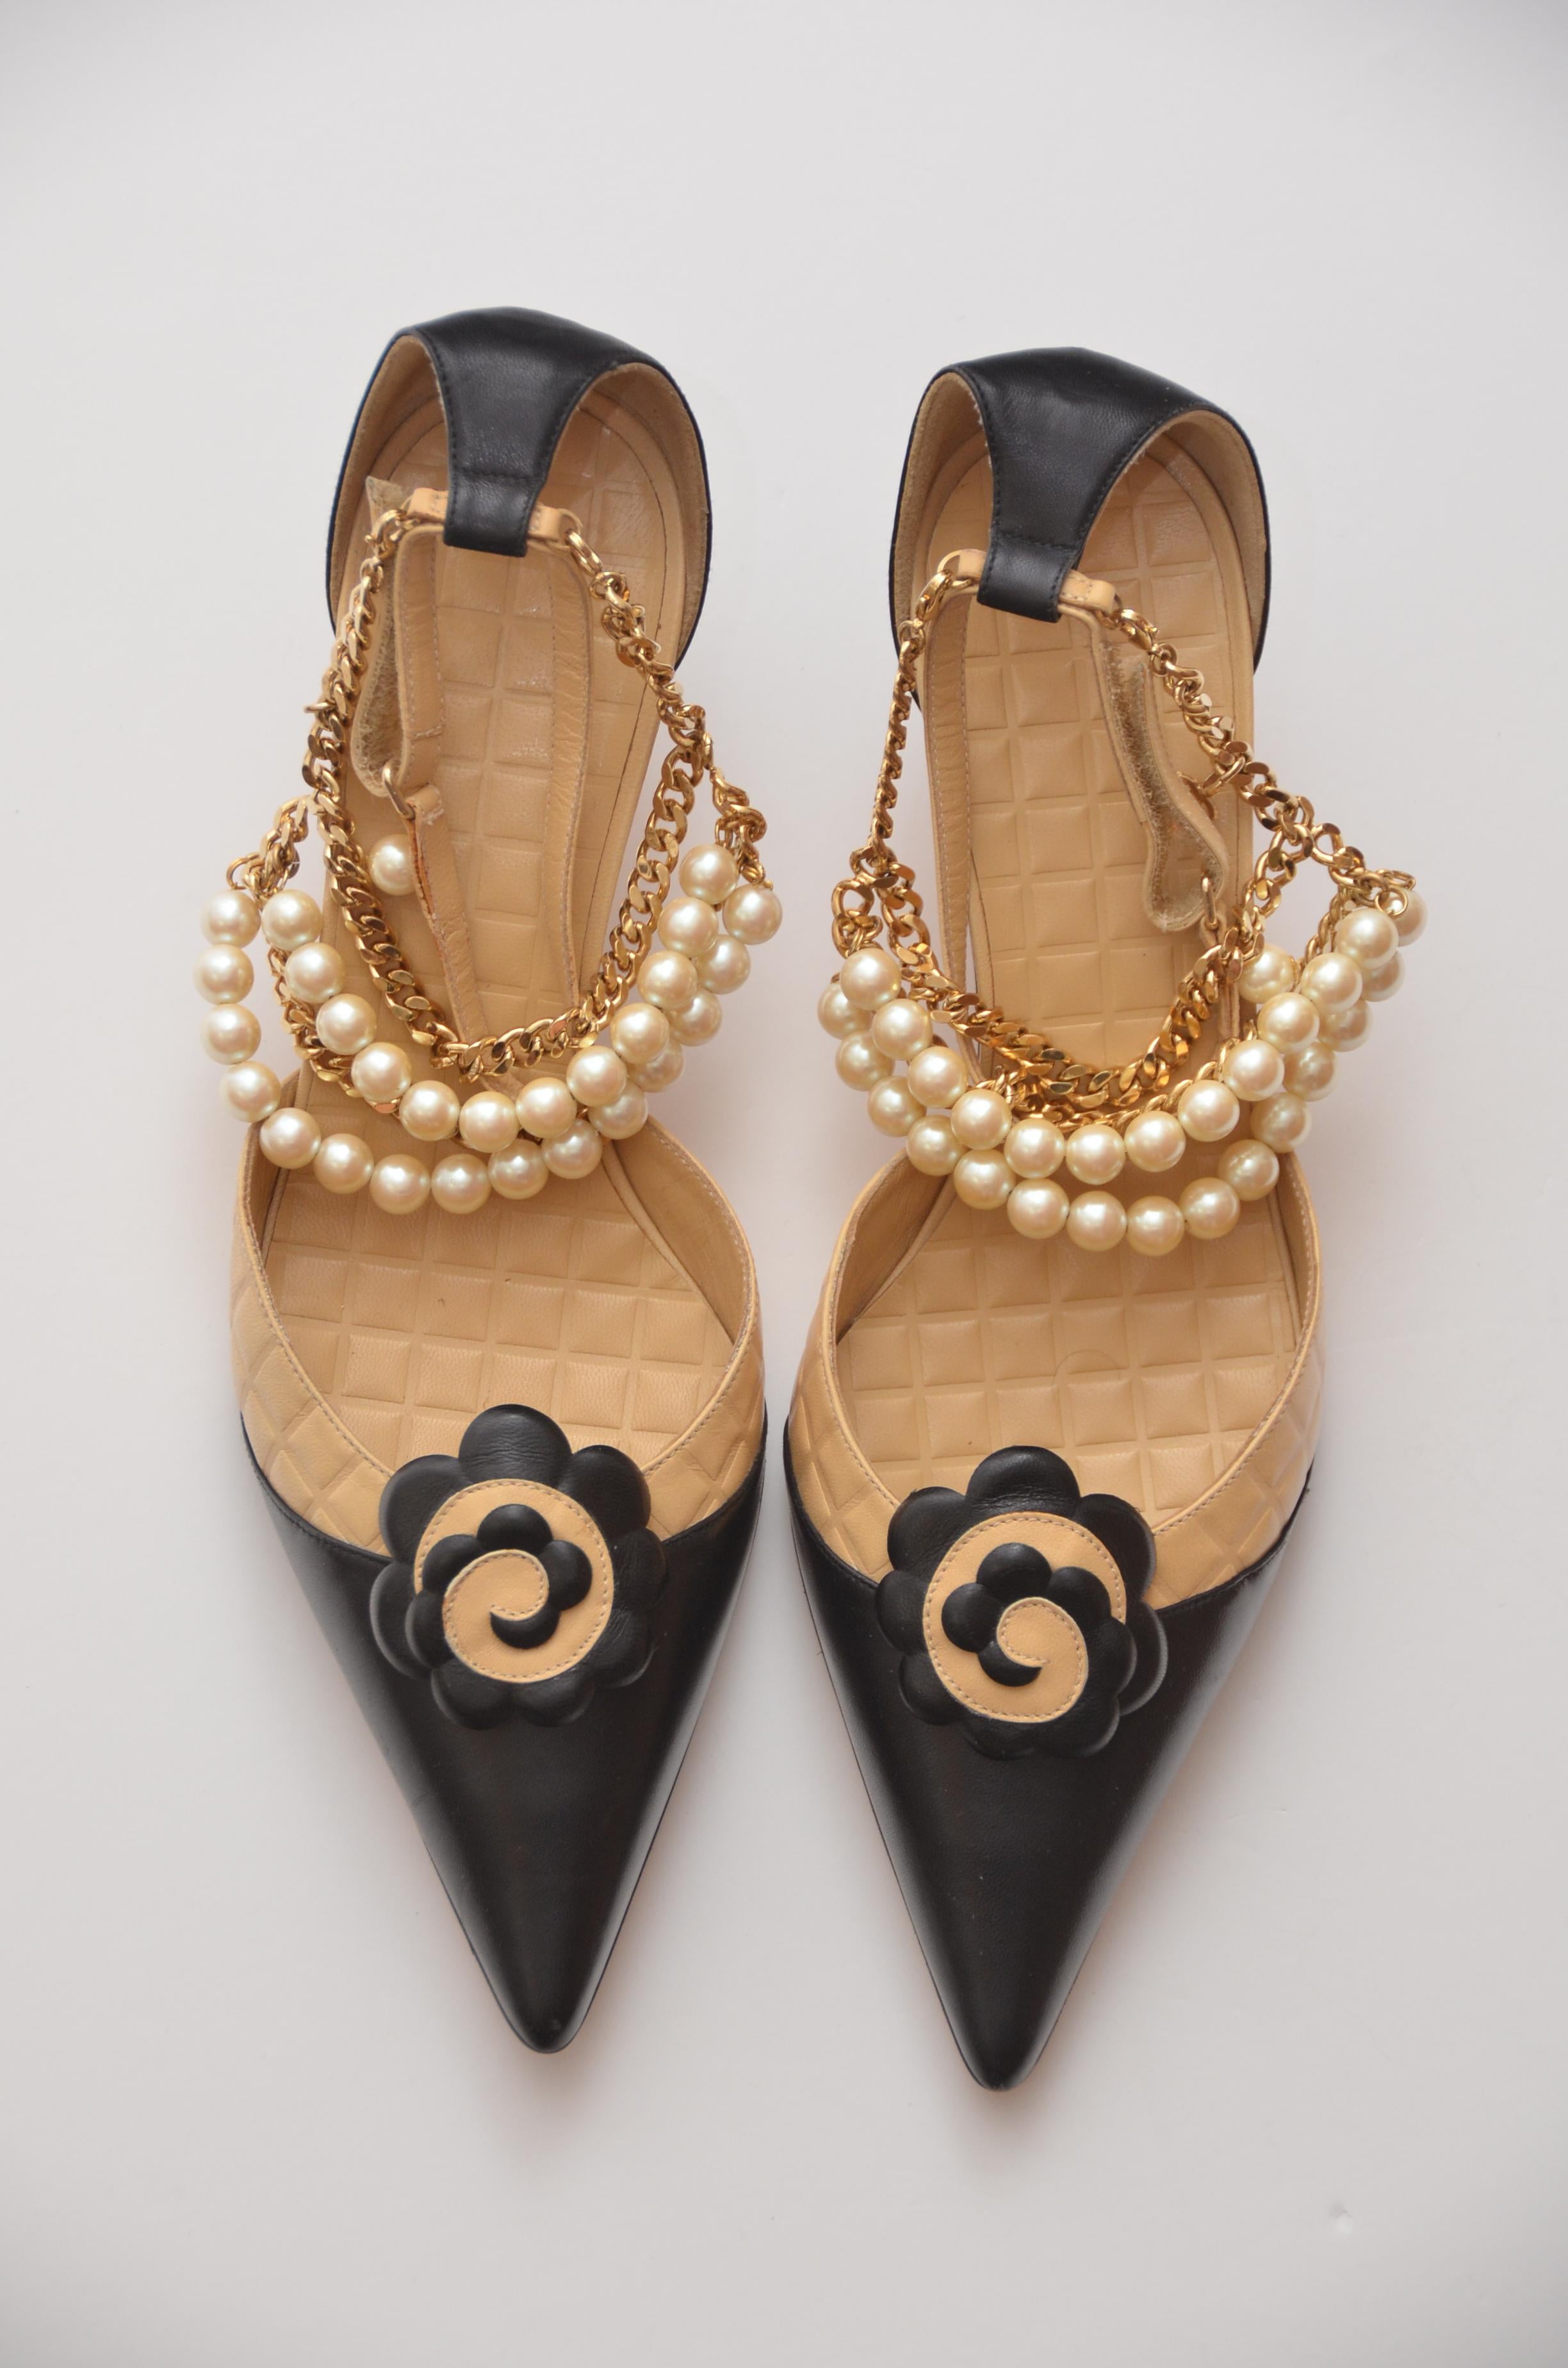 Chanel camellia Kitten Hill Schuhe mit abnehmbarer goldfarbener Kette, Perlen und mini CC an der Kette.
Zustand ist neuwertig, nie benutzt mit einigen kleinen Mängeln durch die Lagerung.
Die Kette mit Perlen ist abnehmbar, ebenso wie die